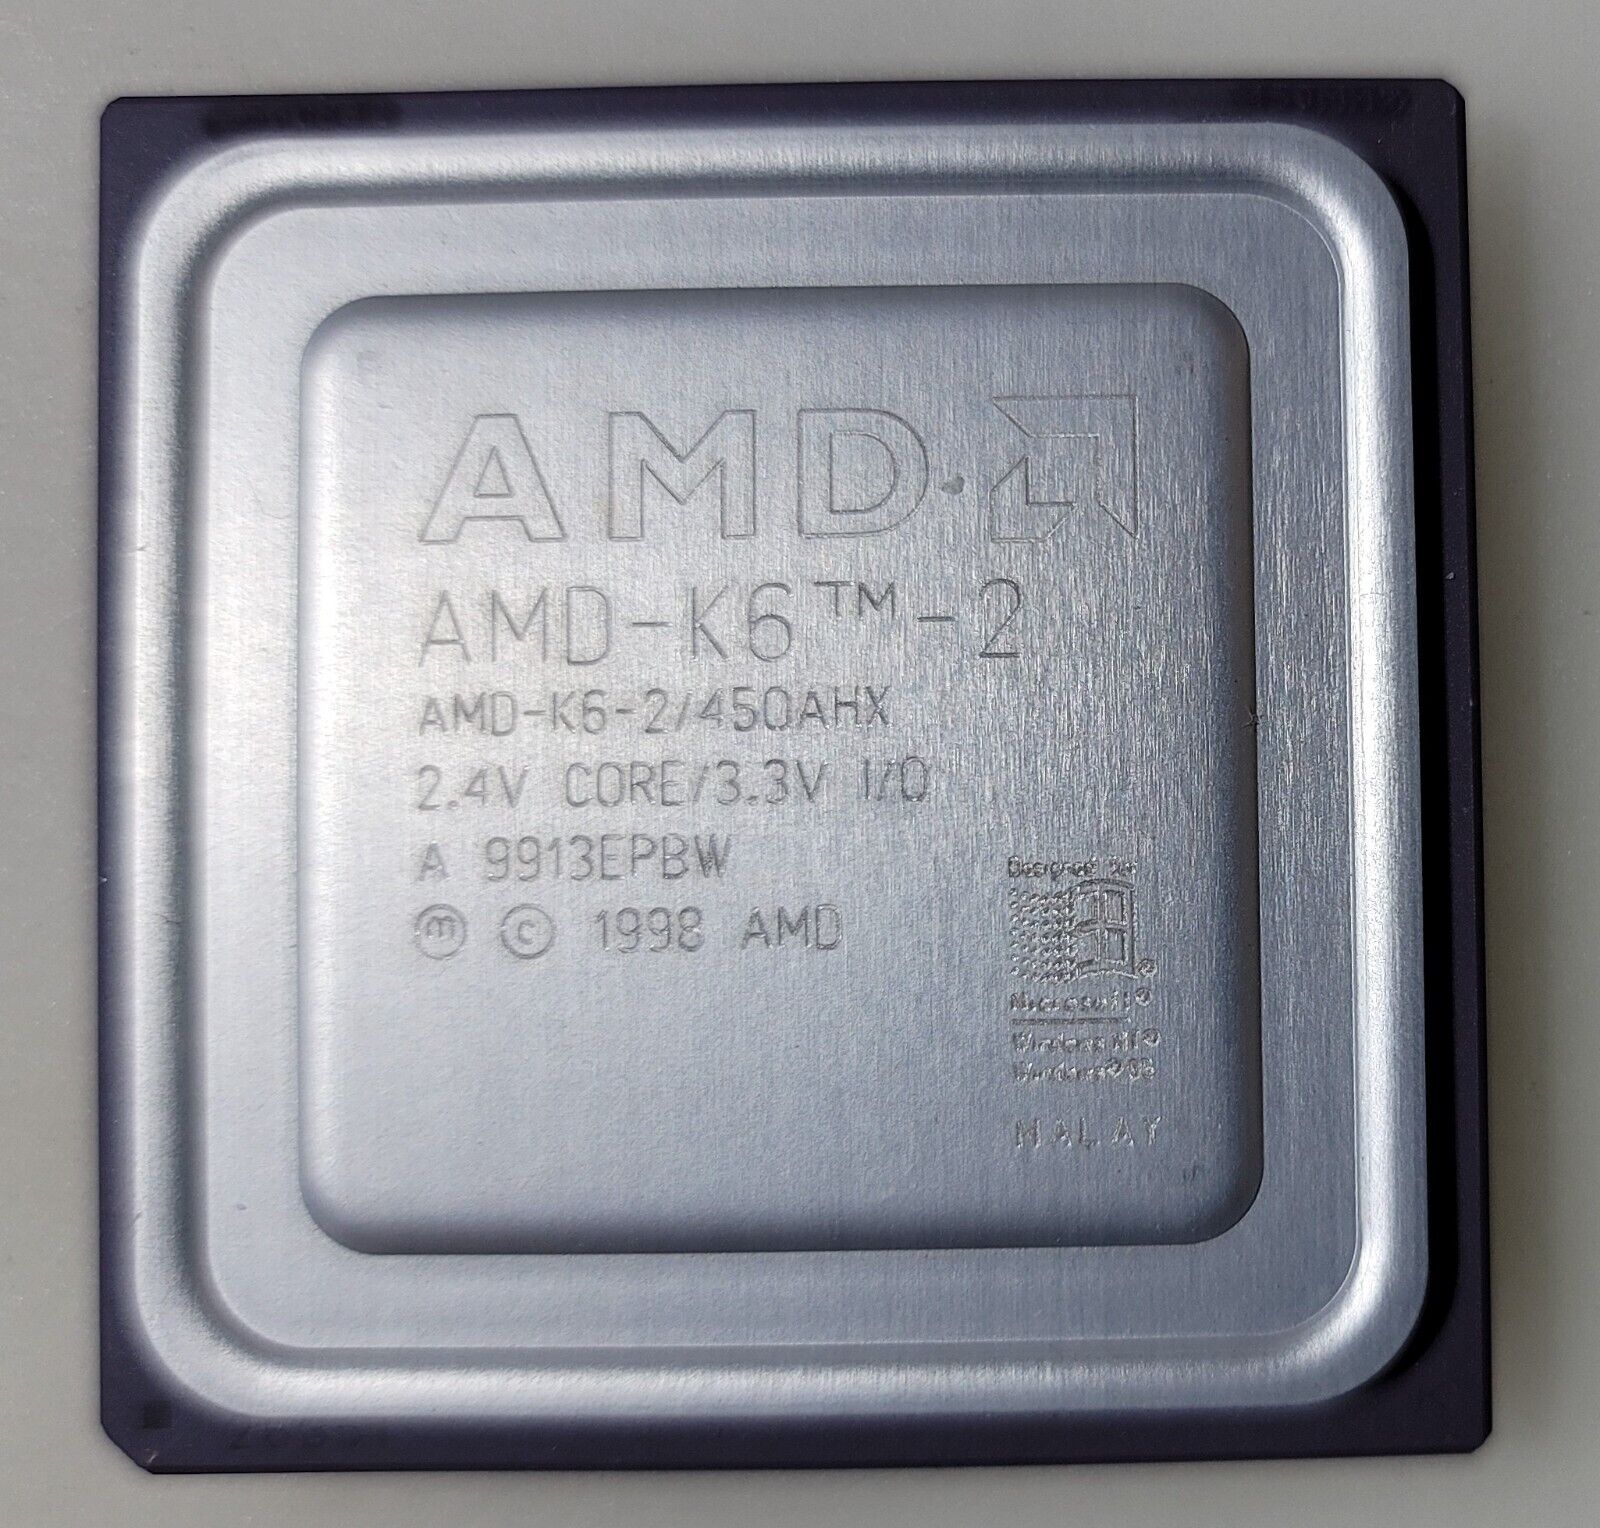 Vintage AMD K6 AMD-K6-2/450AHX 2.4V Core/3.3V Processor Collection/Gold